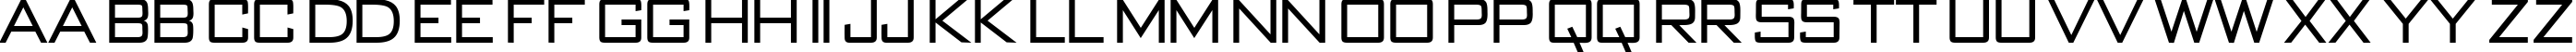 Пример написания английского алфавита шрифтом BankGothic-Regular